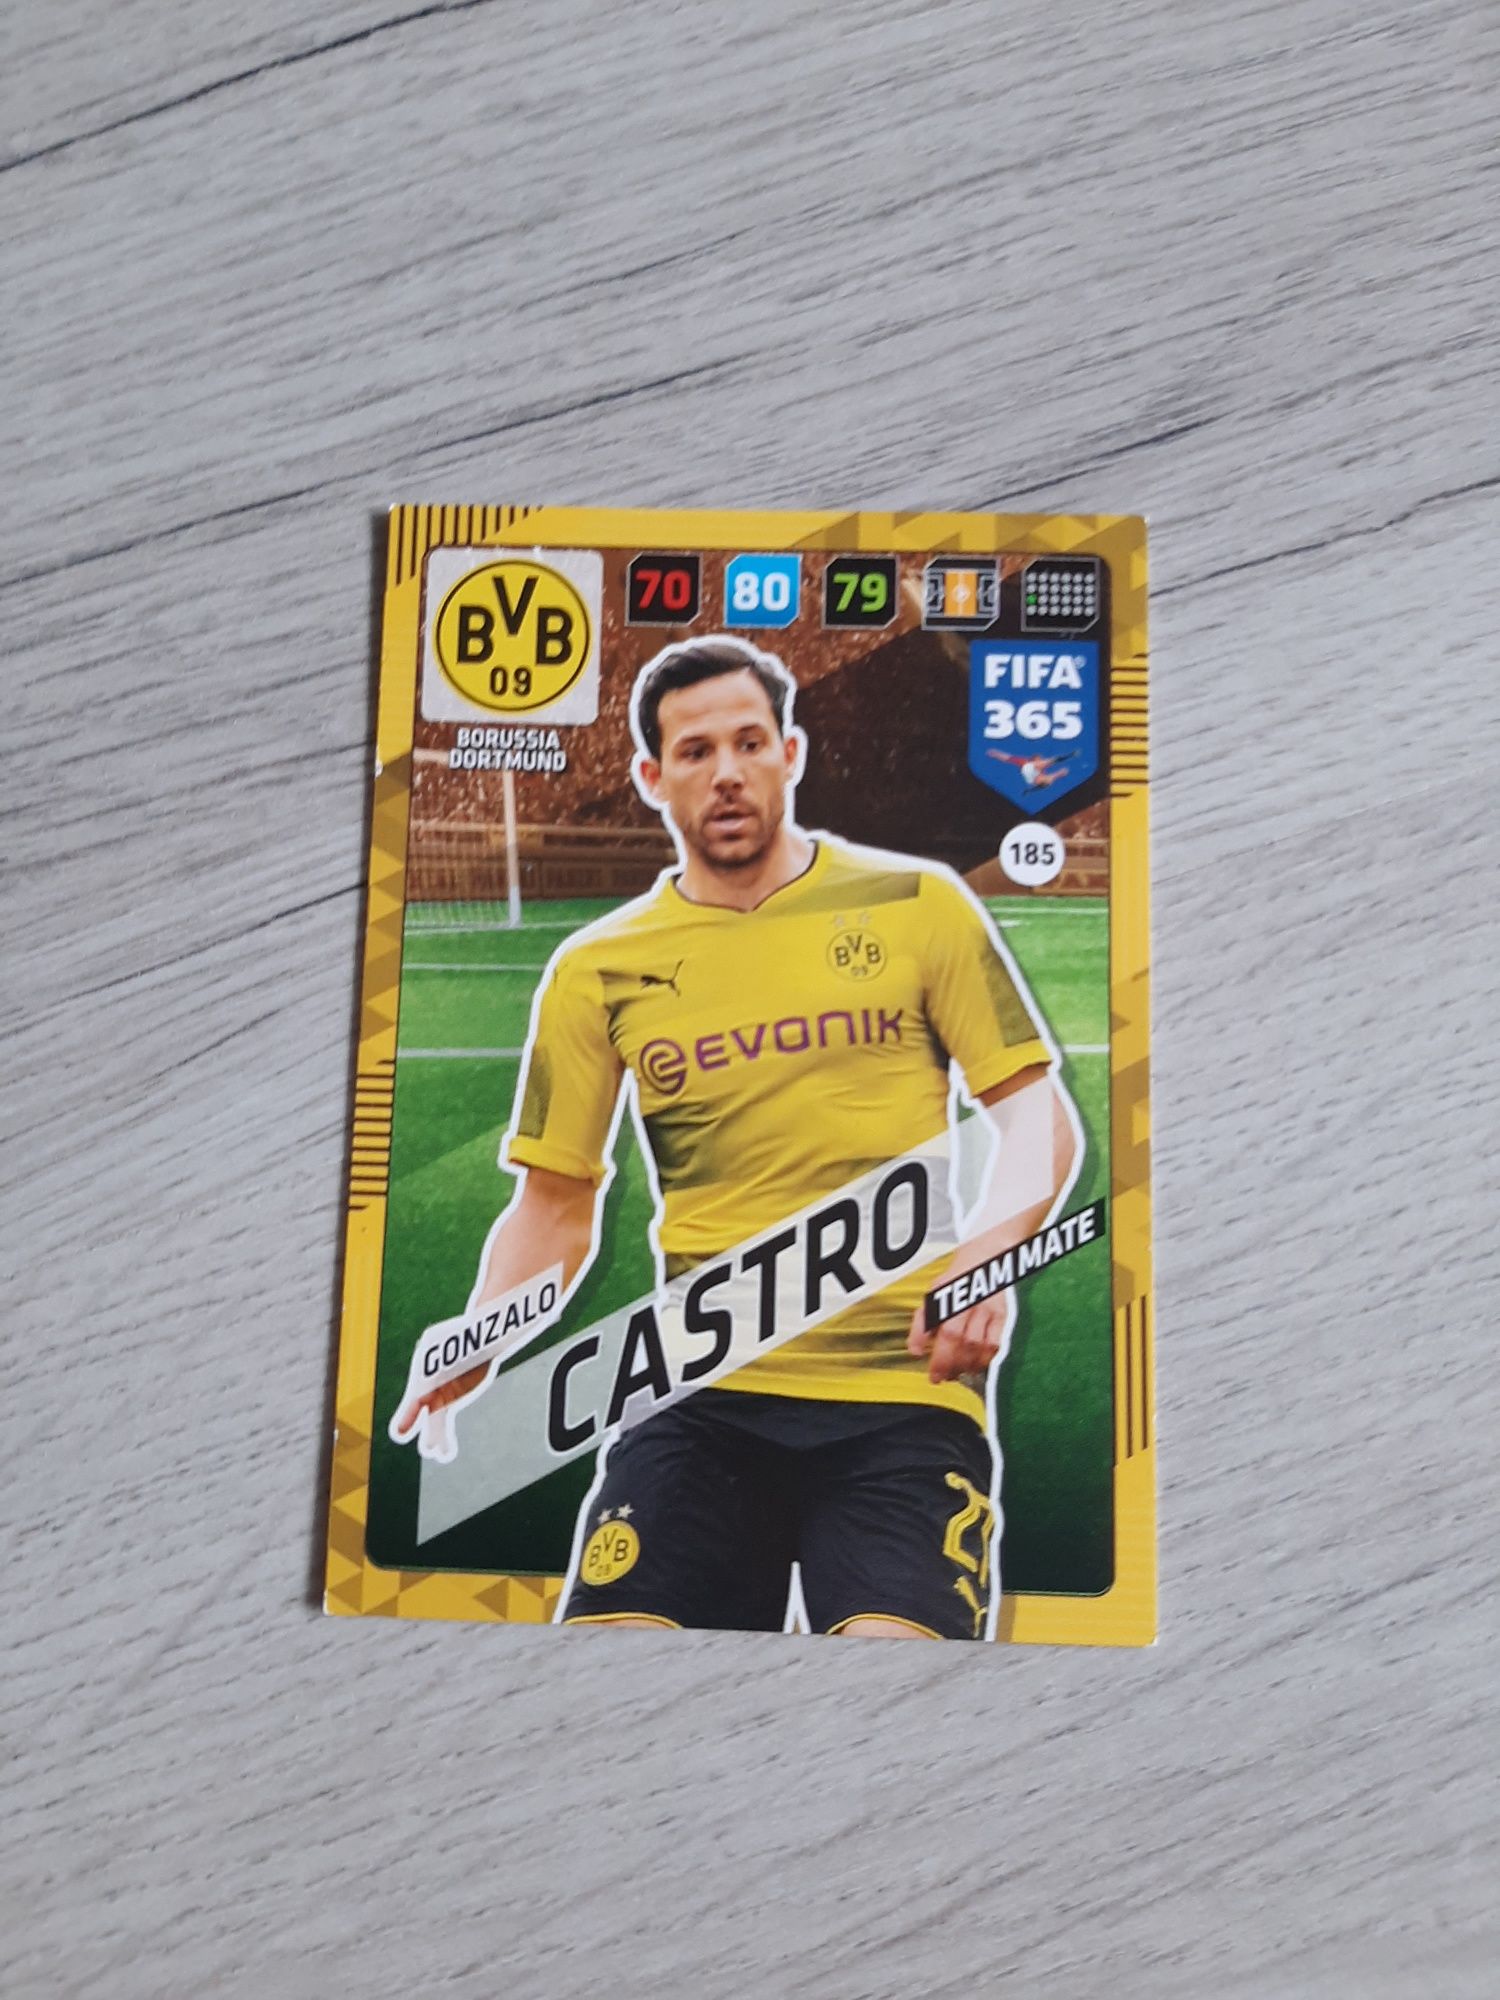 Karta Gonzalo Castro nr185 FIFA365